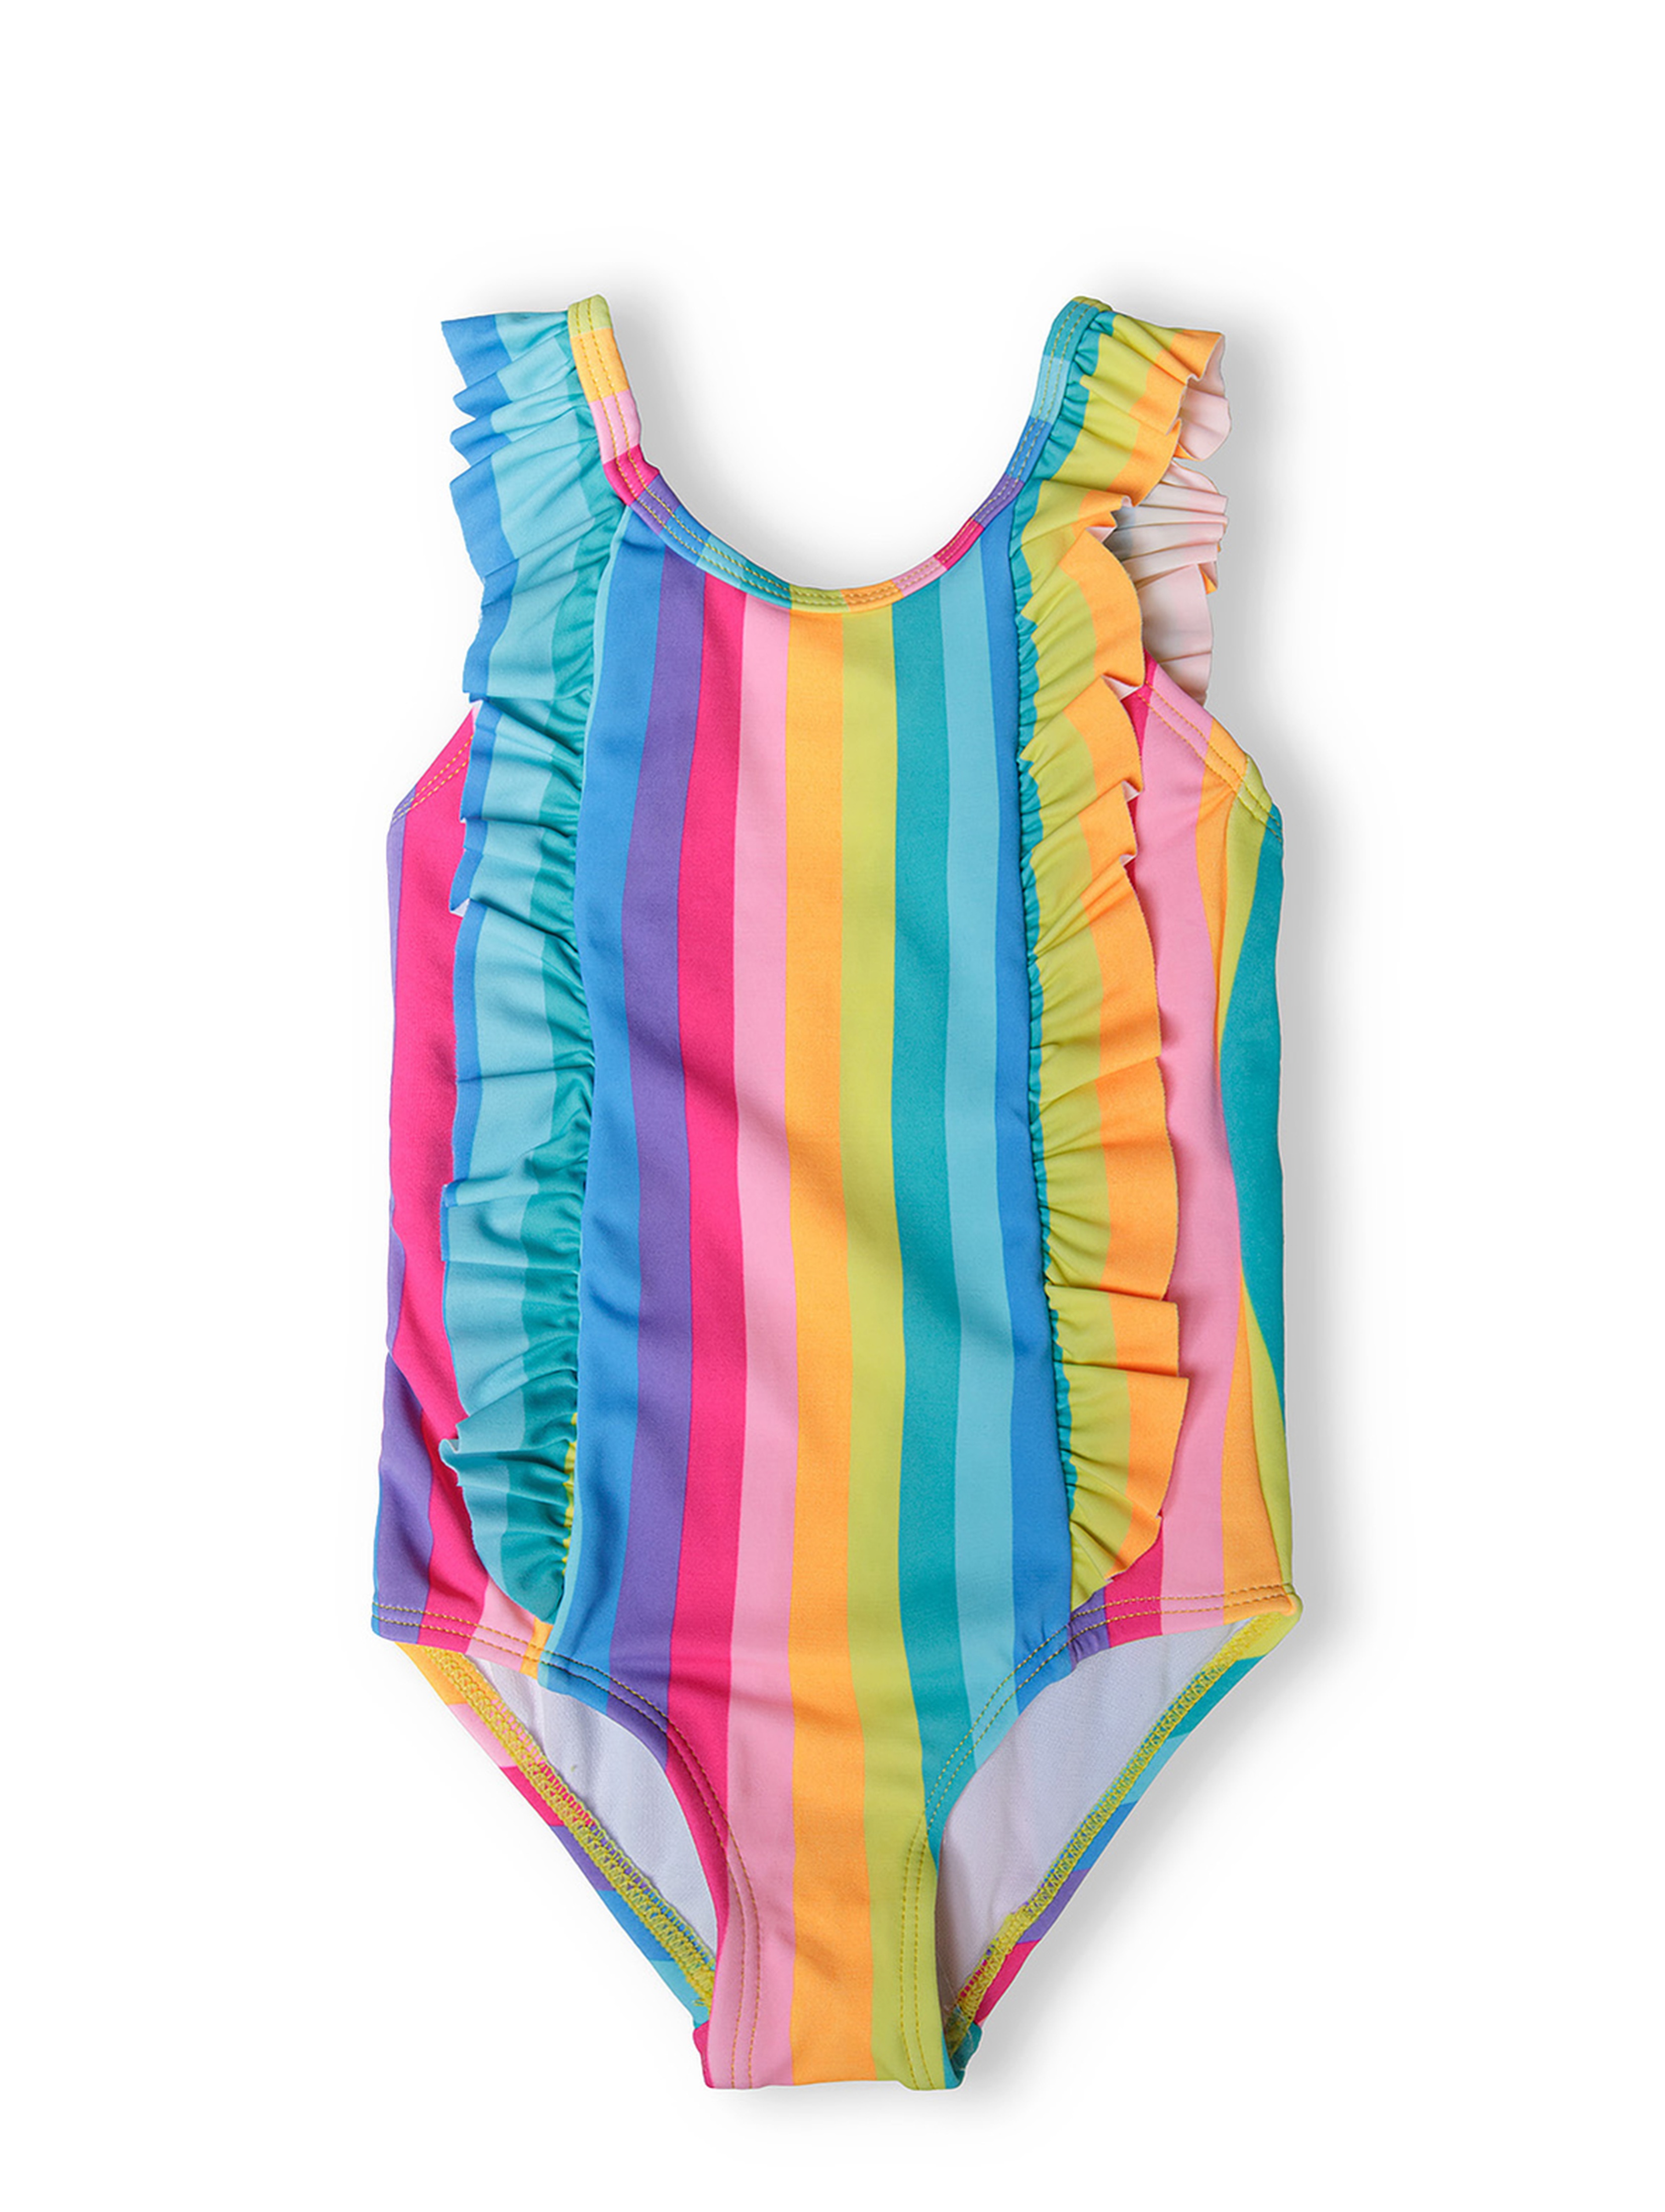 Jednoczęściowy kostium kąpielowy dziewczęcy w kolorowe paski